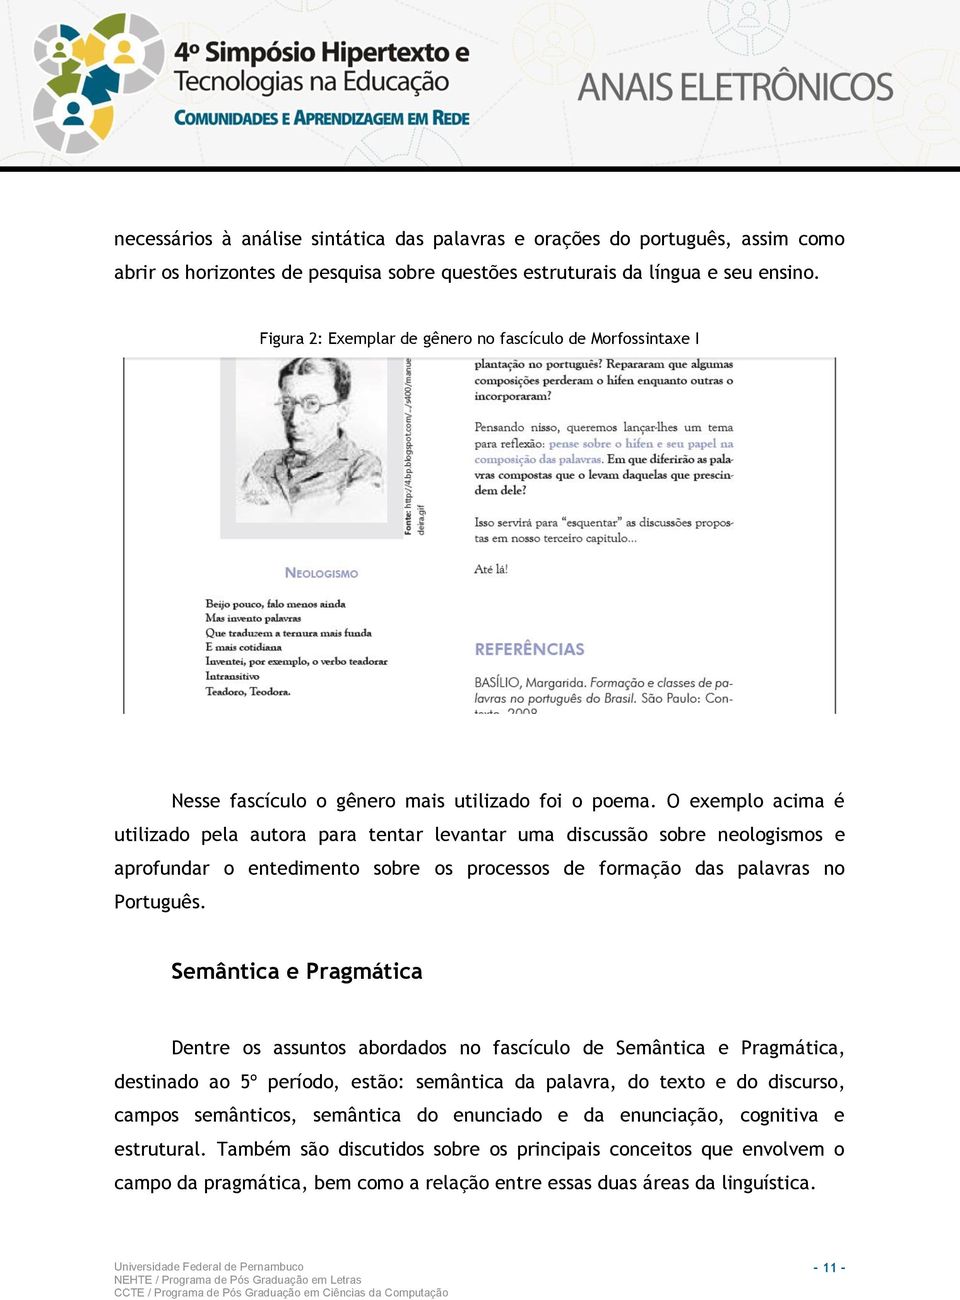 O exemplo acima é utilizado pela autora para tentar levantar uma discussão sobre neologismos e aprofundar o entedimento sobre os processos de formação das palavras no Português.